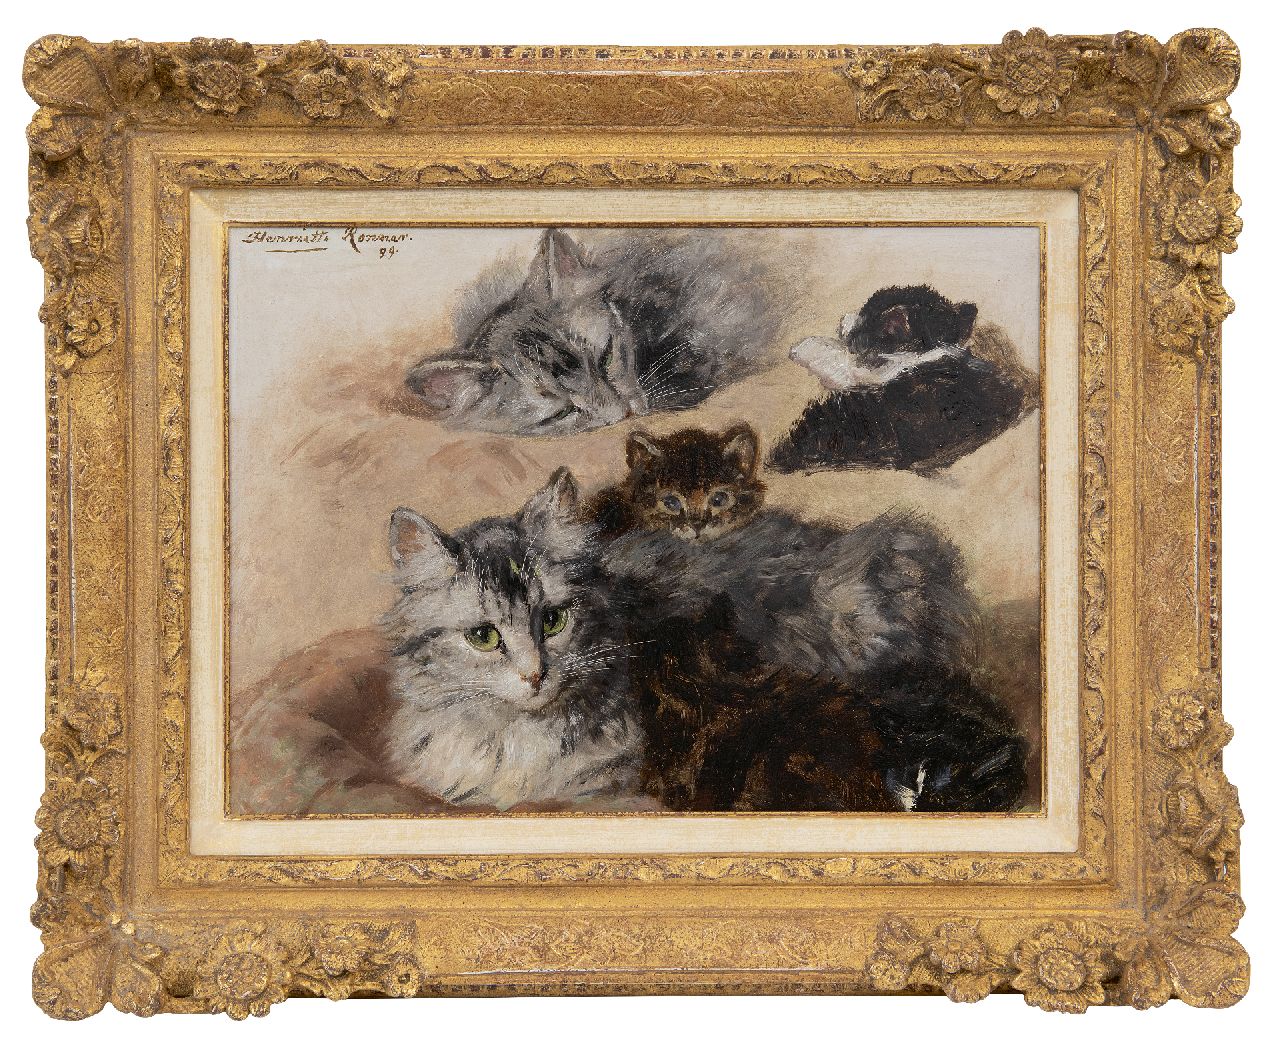 Ronner-Knip H.  | Henriette Ronner-Knip, Studie van poes en kittens, olieverf op paneel 27,7 x 37,4 cm, gesigneerd linksboven en gedateerd '99